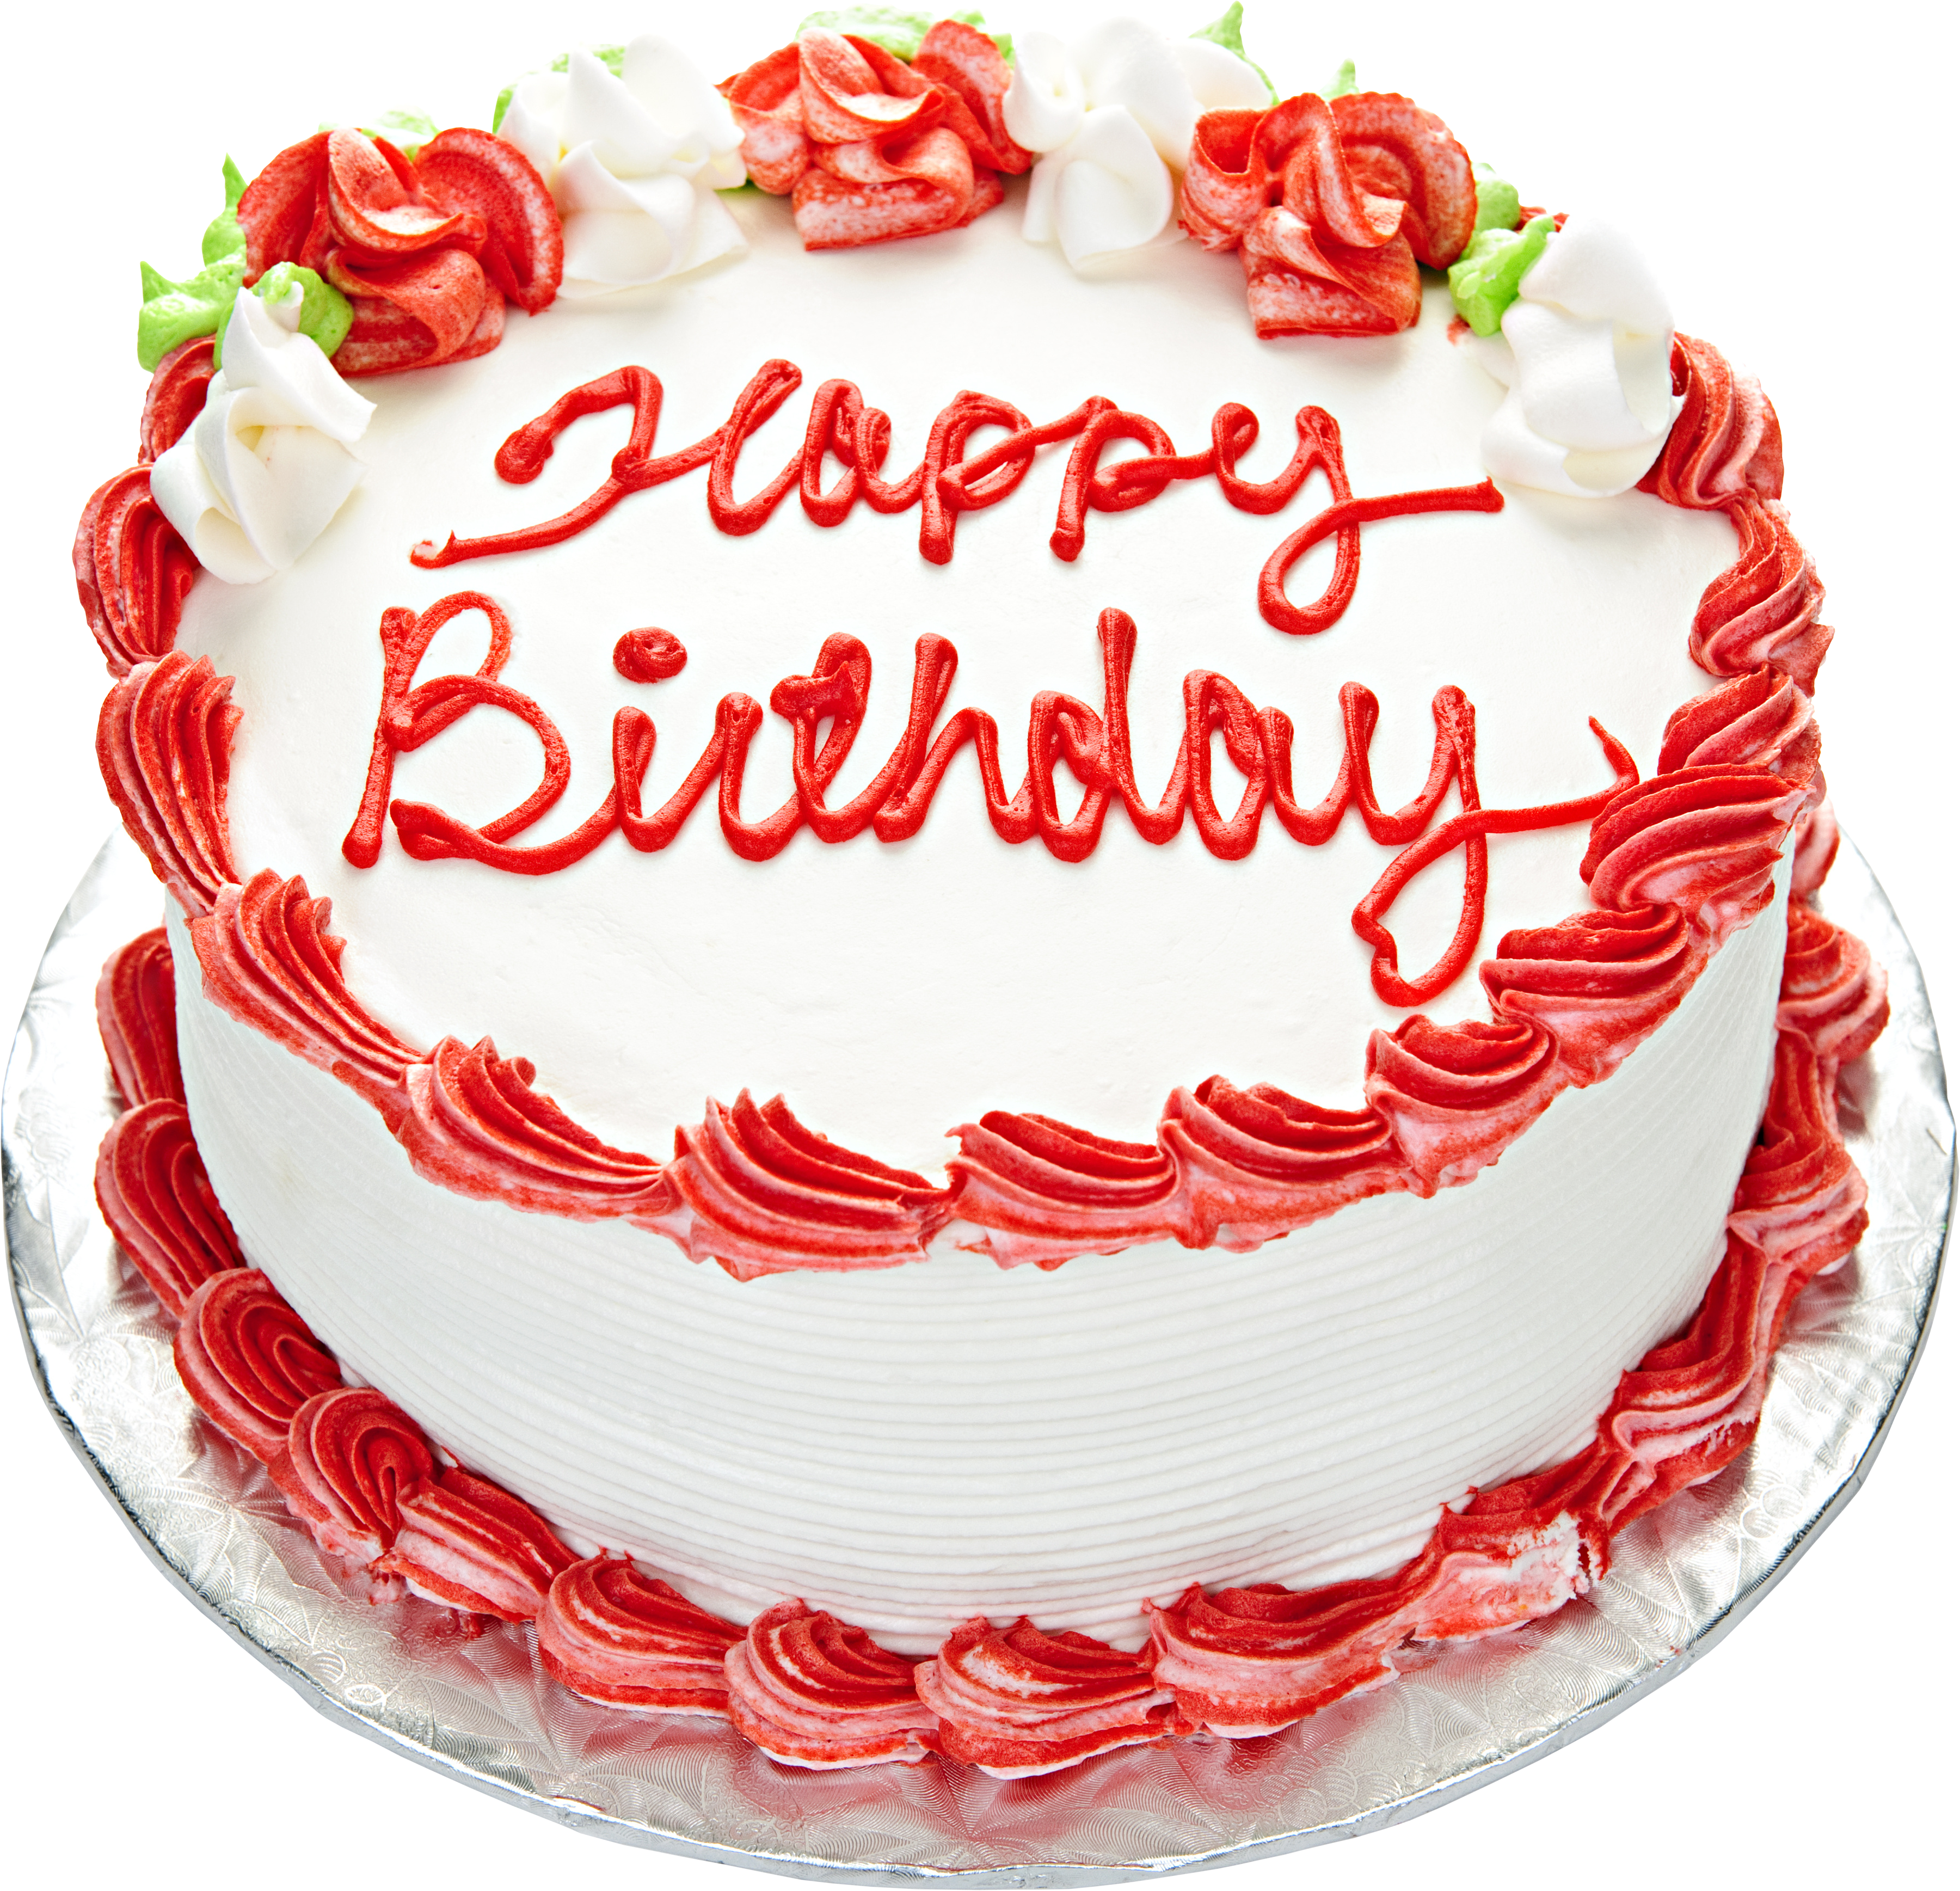 Birthday Cake Png Images  Free Download on Freepik